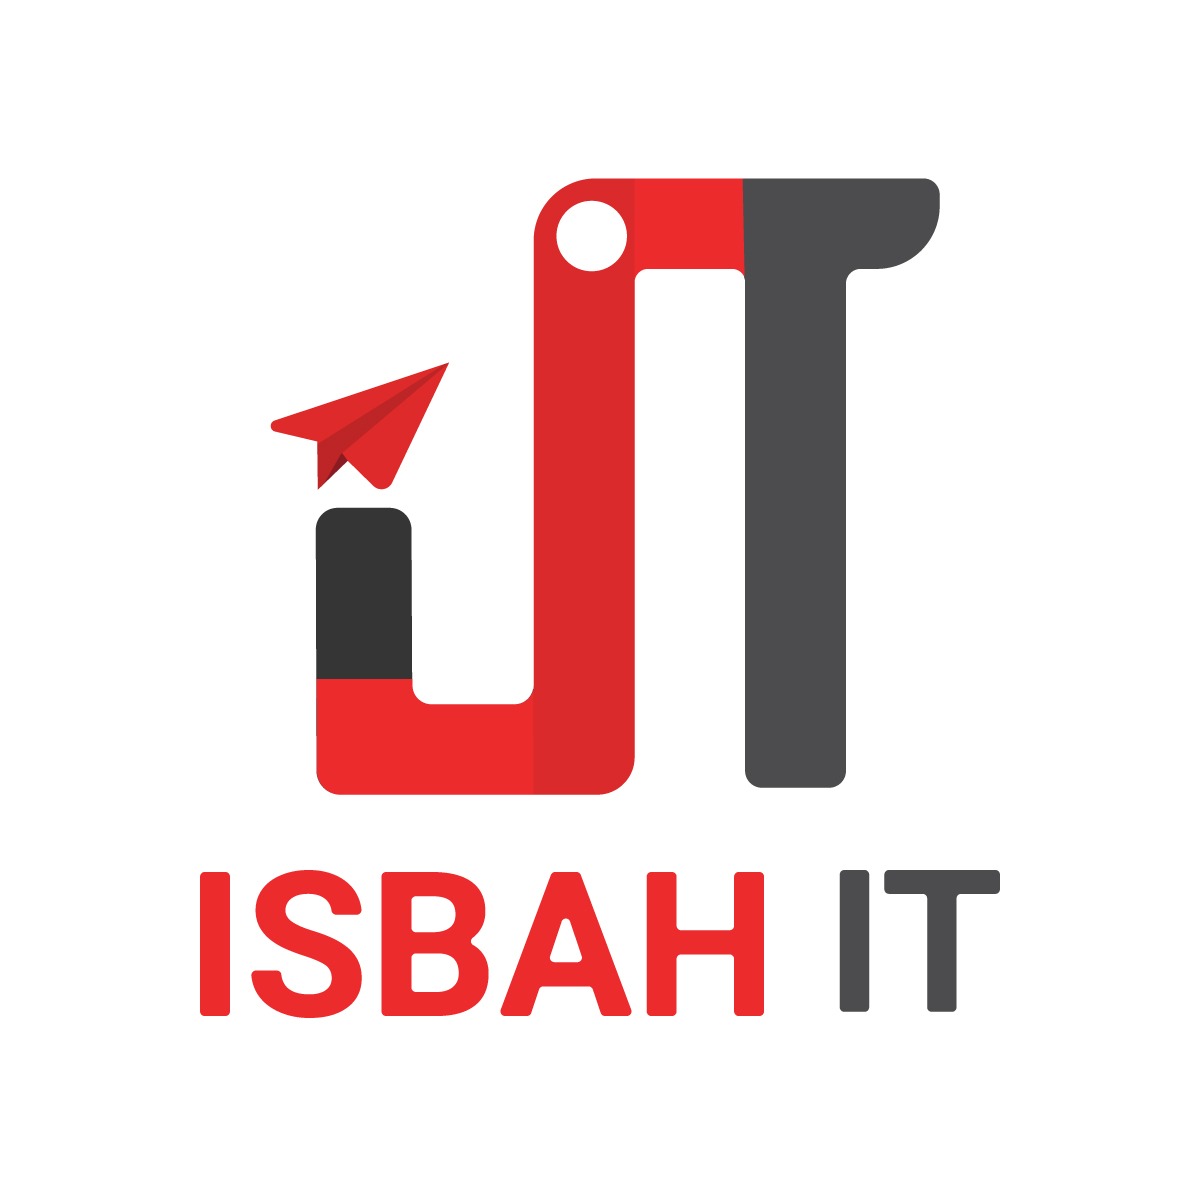 Isbah IT-logo